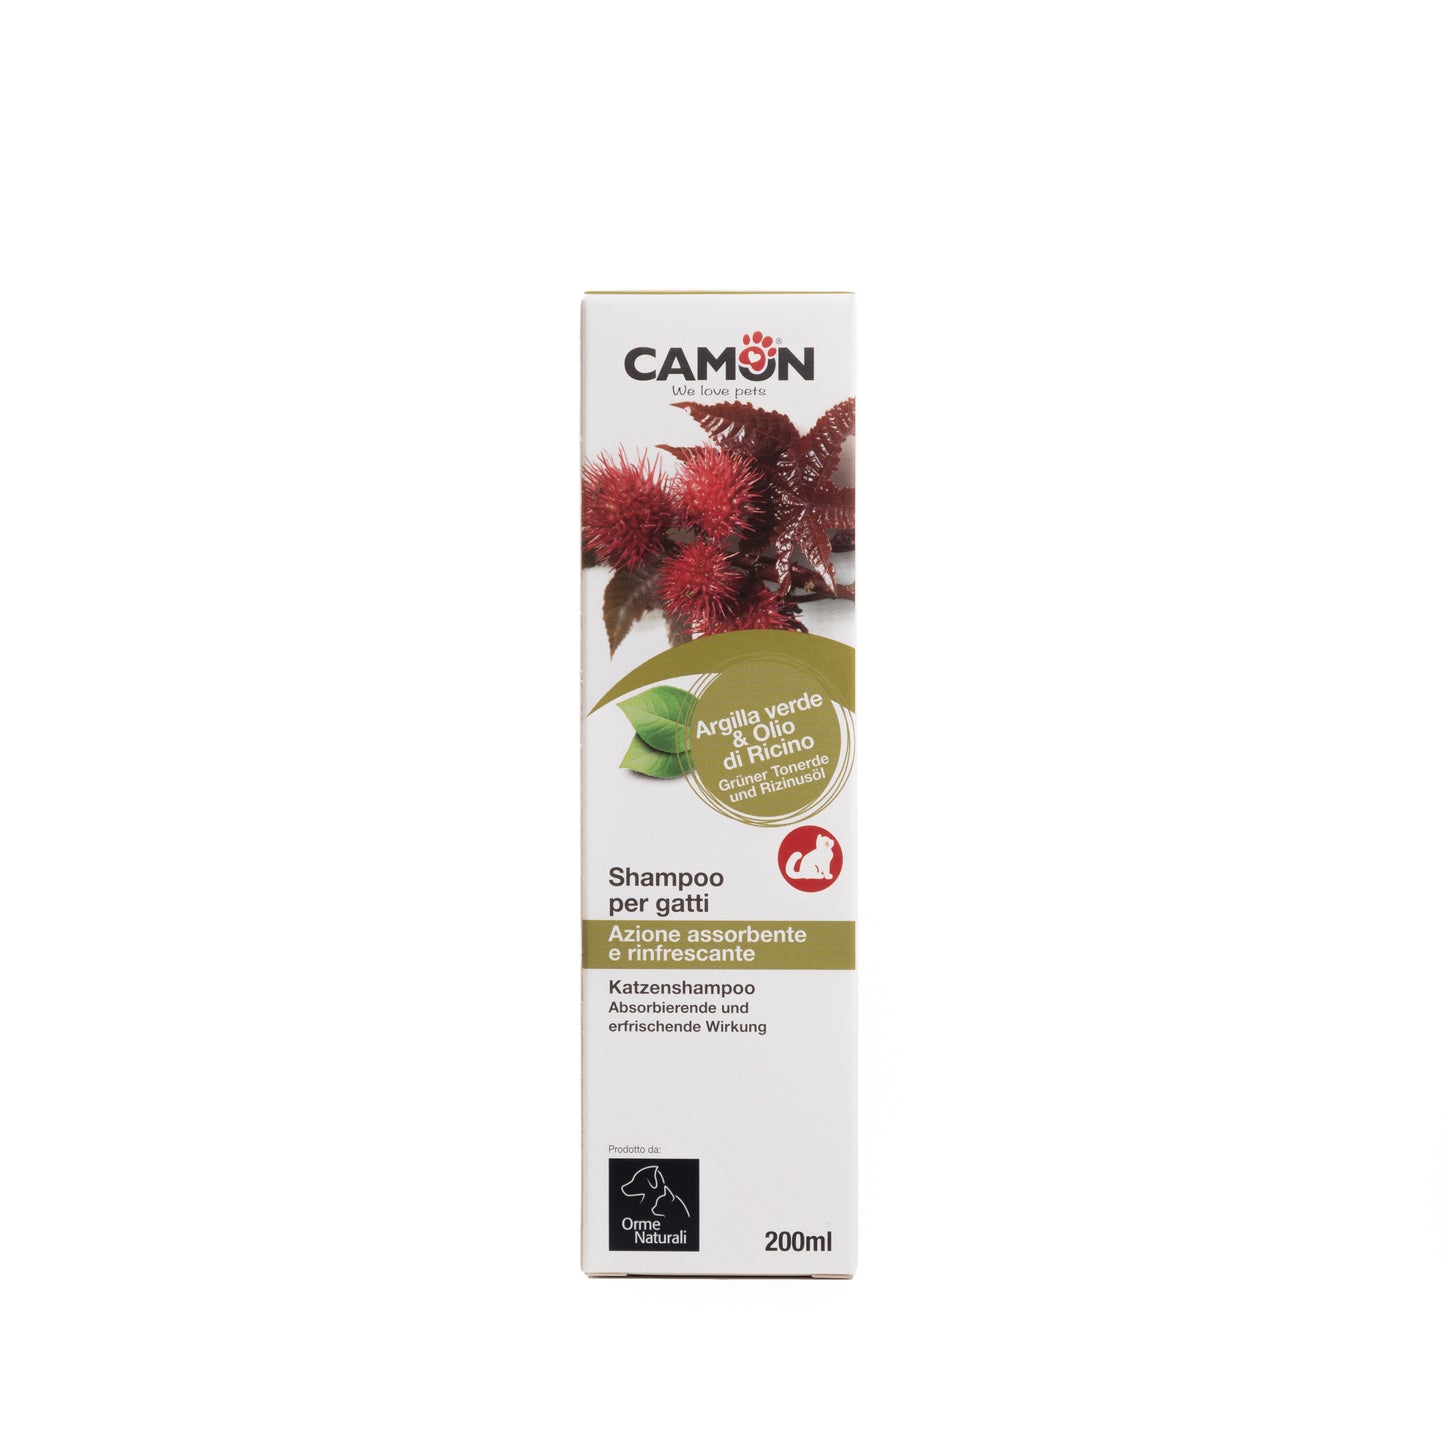 Camon Natural - Shampoo per gatti - 200ml